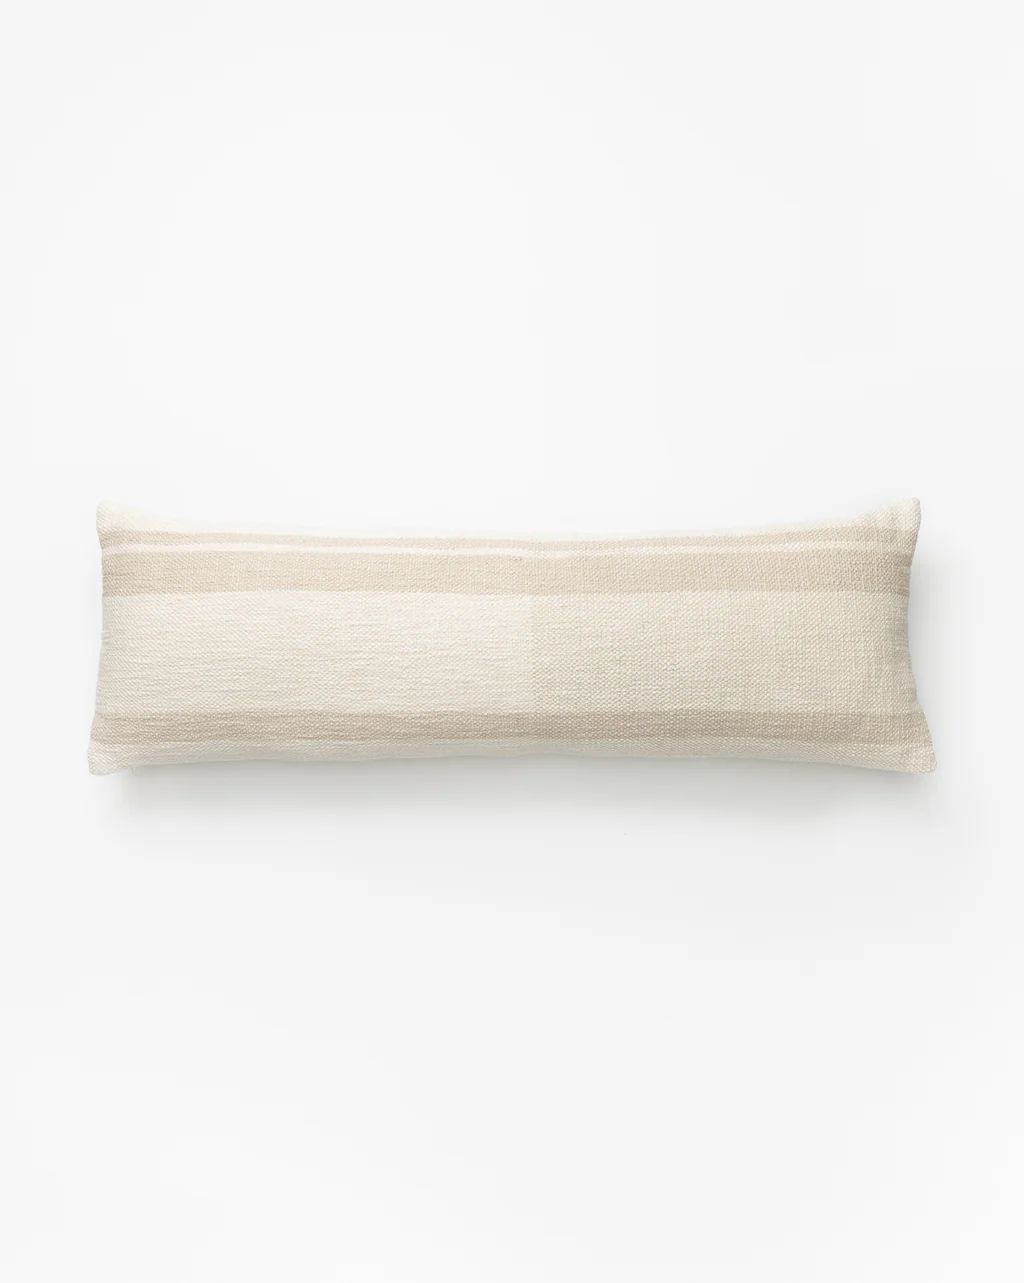 Bridger Pillow Cover | McGee & Co.